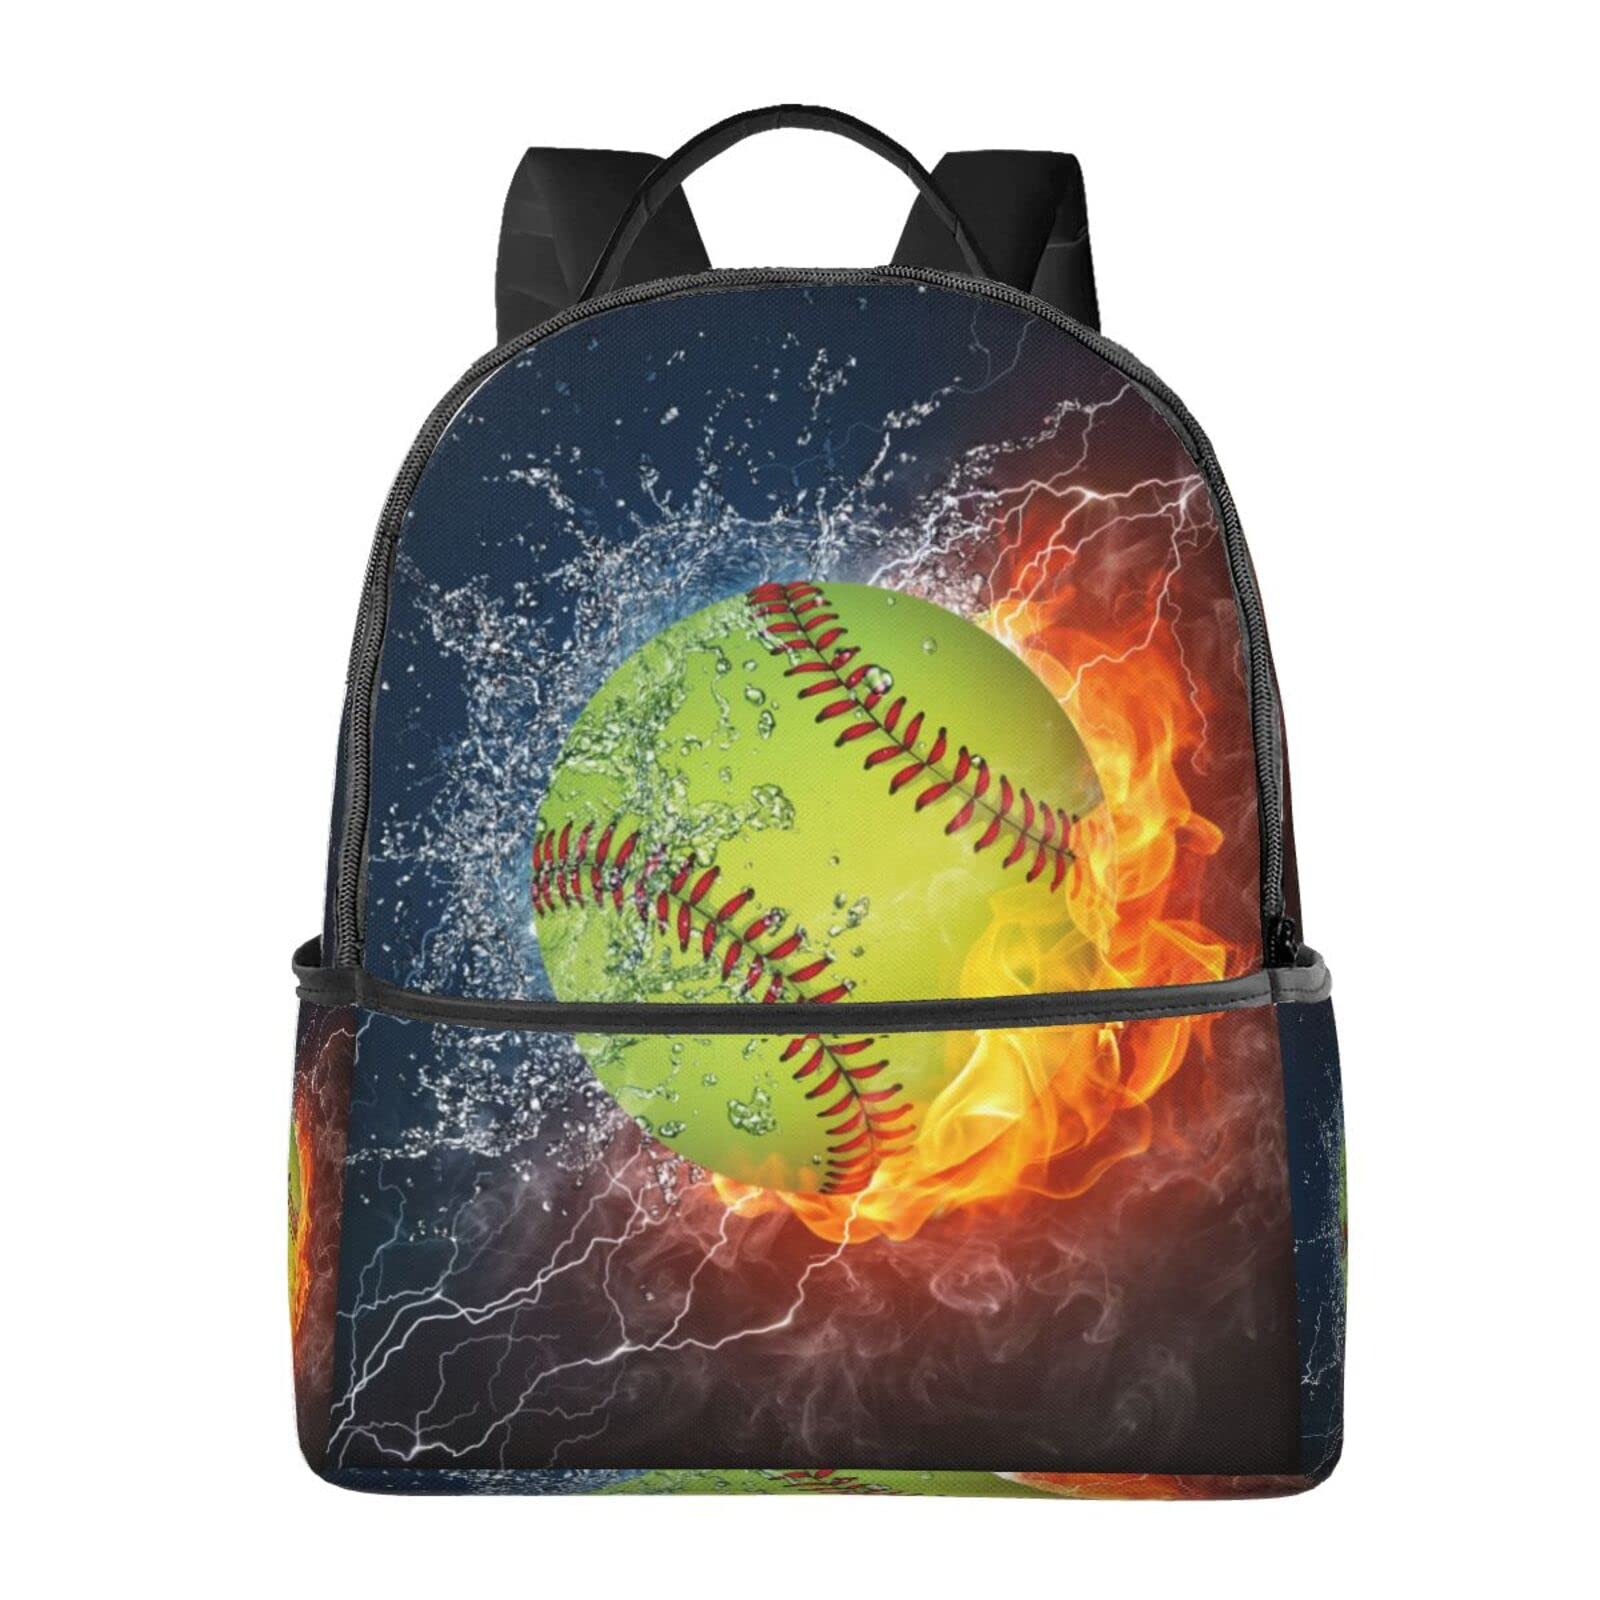 送料無料EVANEM Laptop Backpack Lightweight Travel Backpack Shoulders Bag Softball Baseball On Fire And Water Printed For